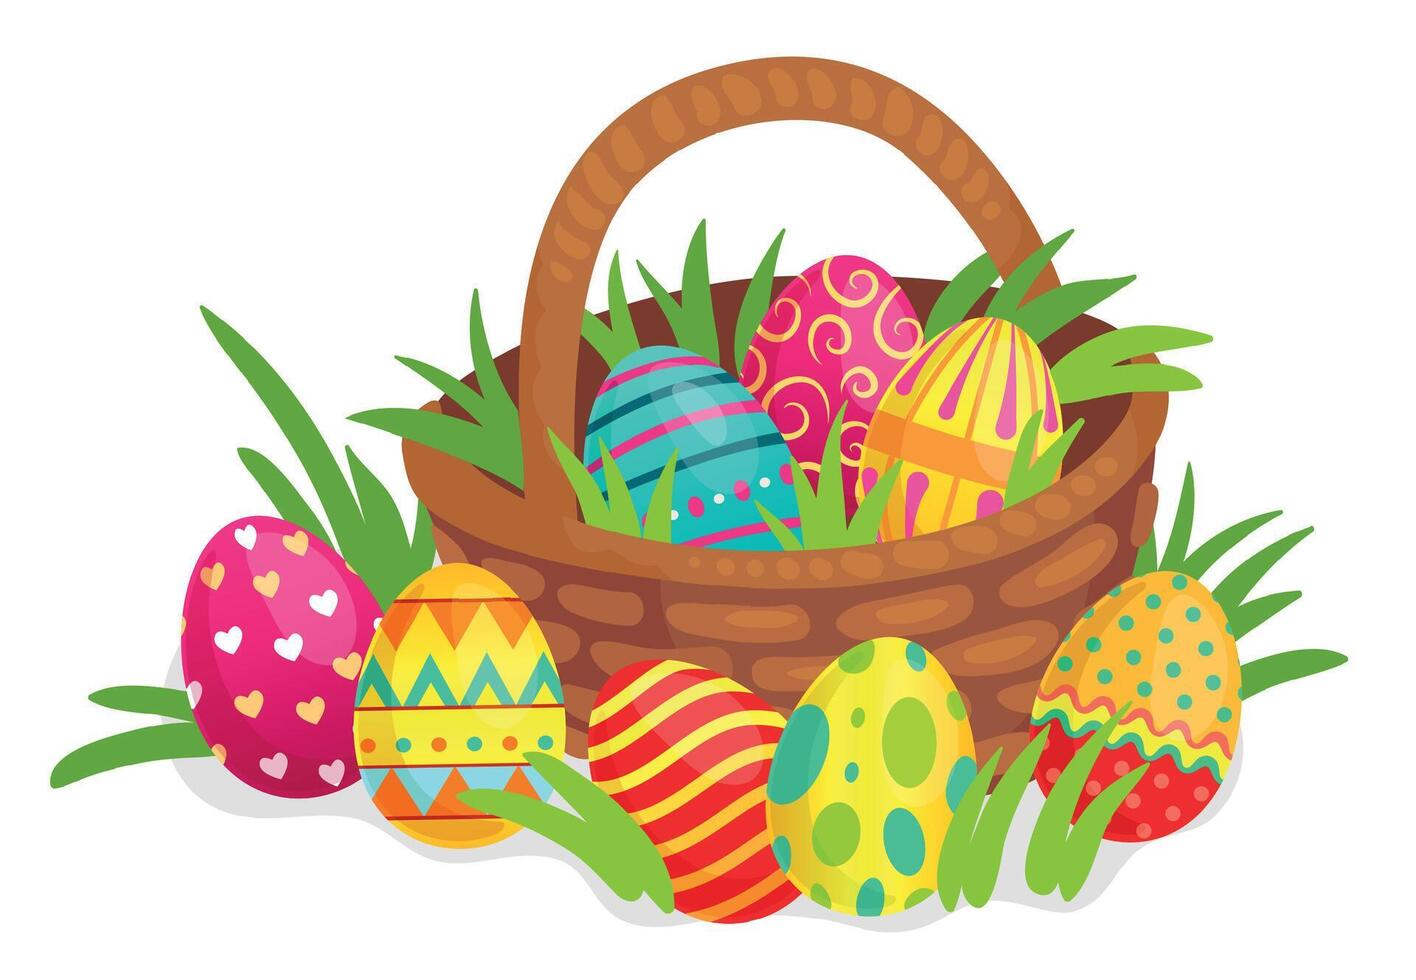 Pasqua decorato uova nel di vimini cestino. colorato uova con cuori, linee, puntini e volteggi arredamento per vacanza vettore